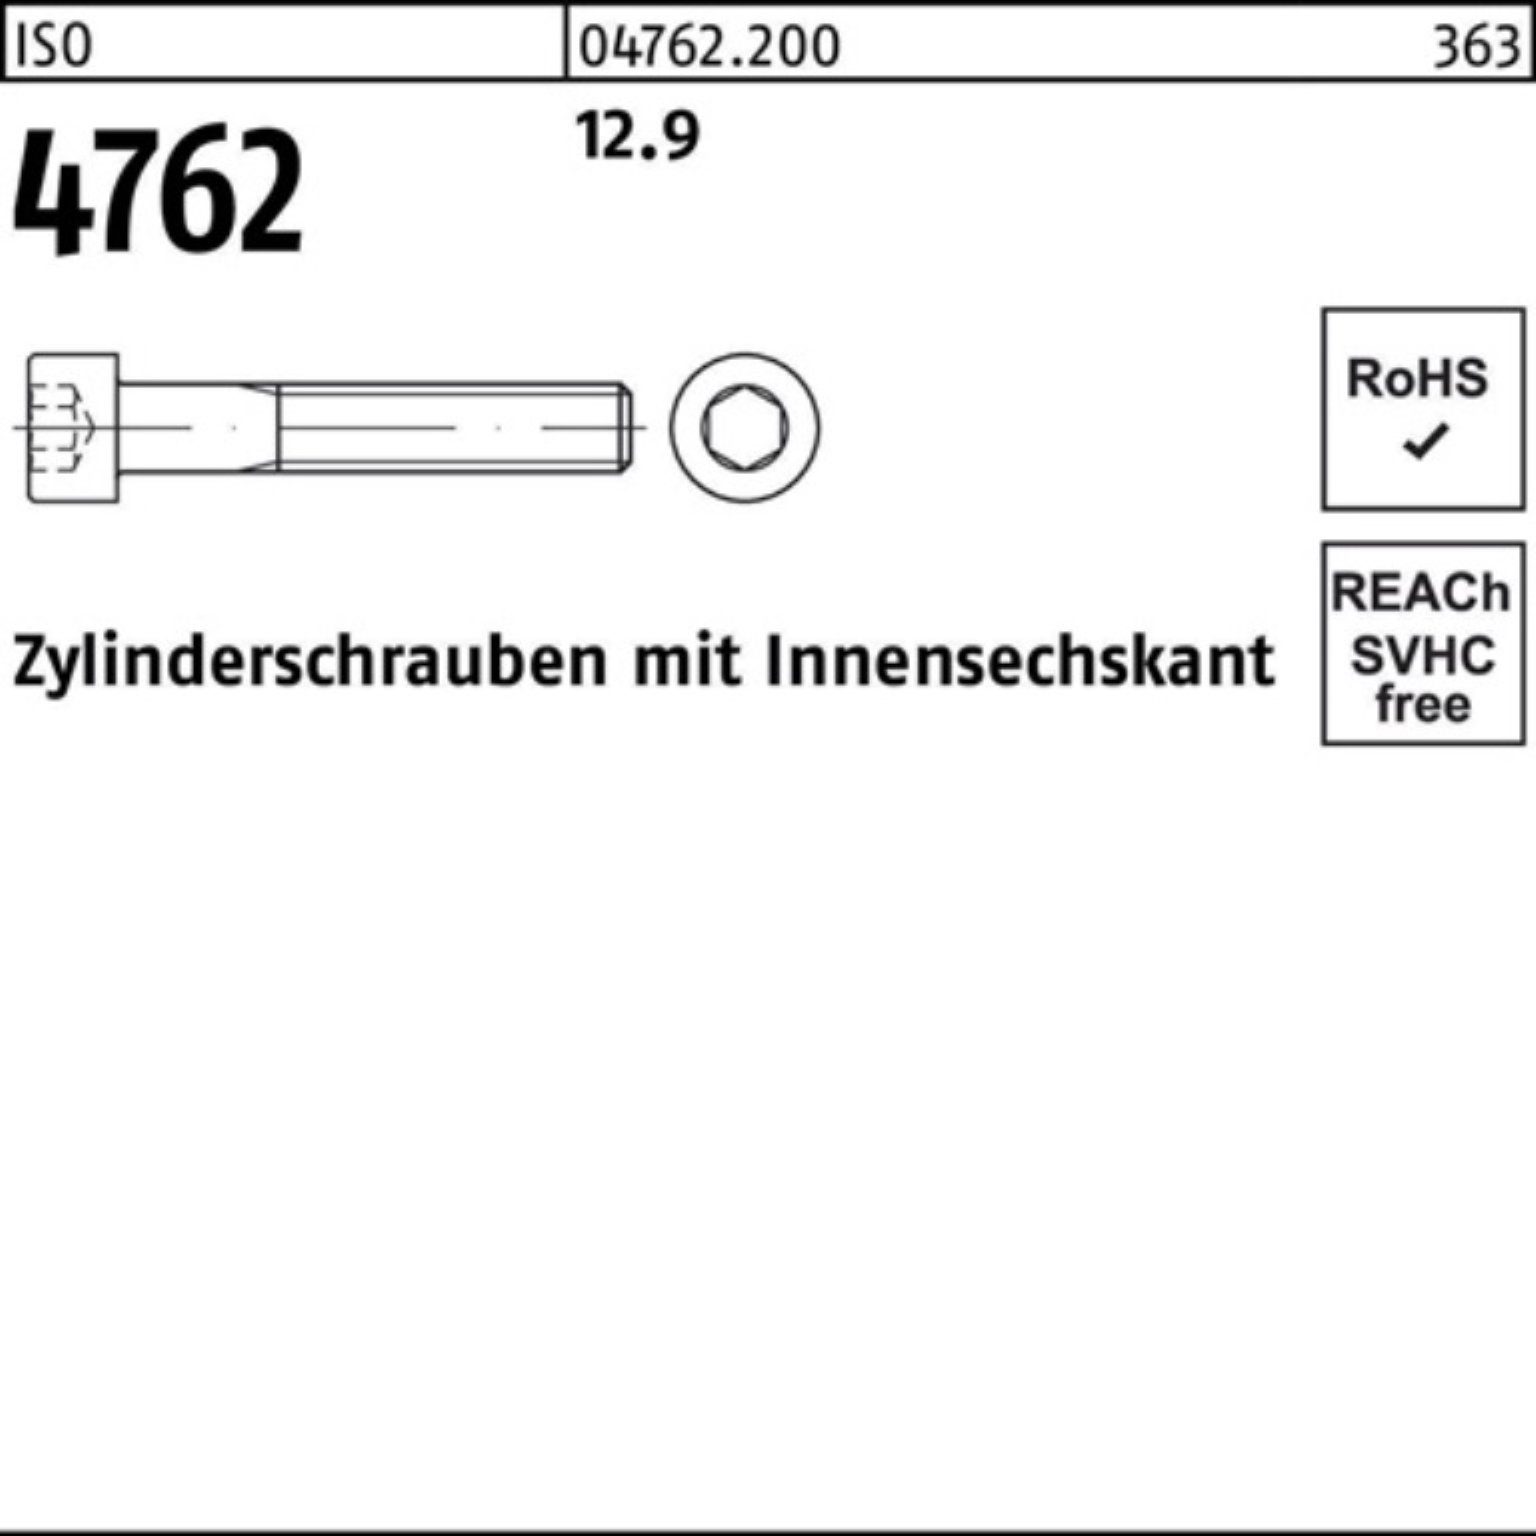 Reyher Zylinderschraube 100er Pack Zylinderschraube Innen-6kt 1 12.9 4762 Stück M27x 280 ISO